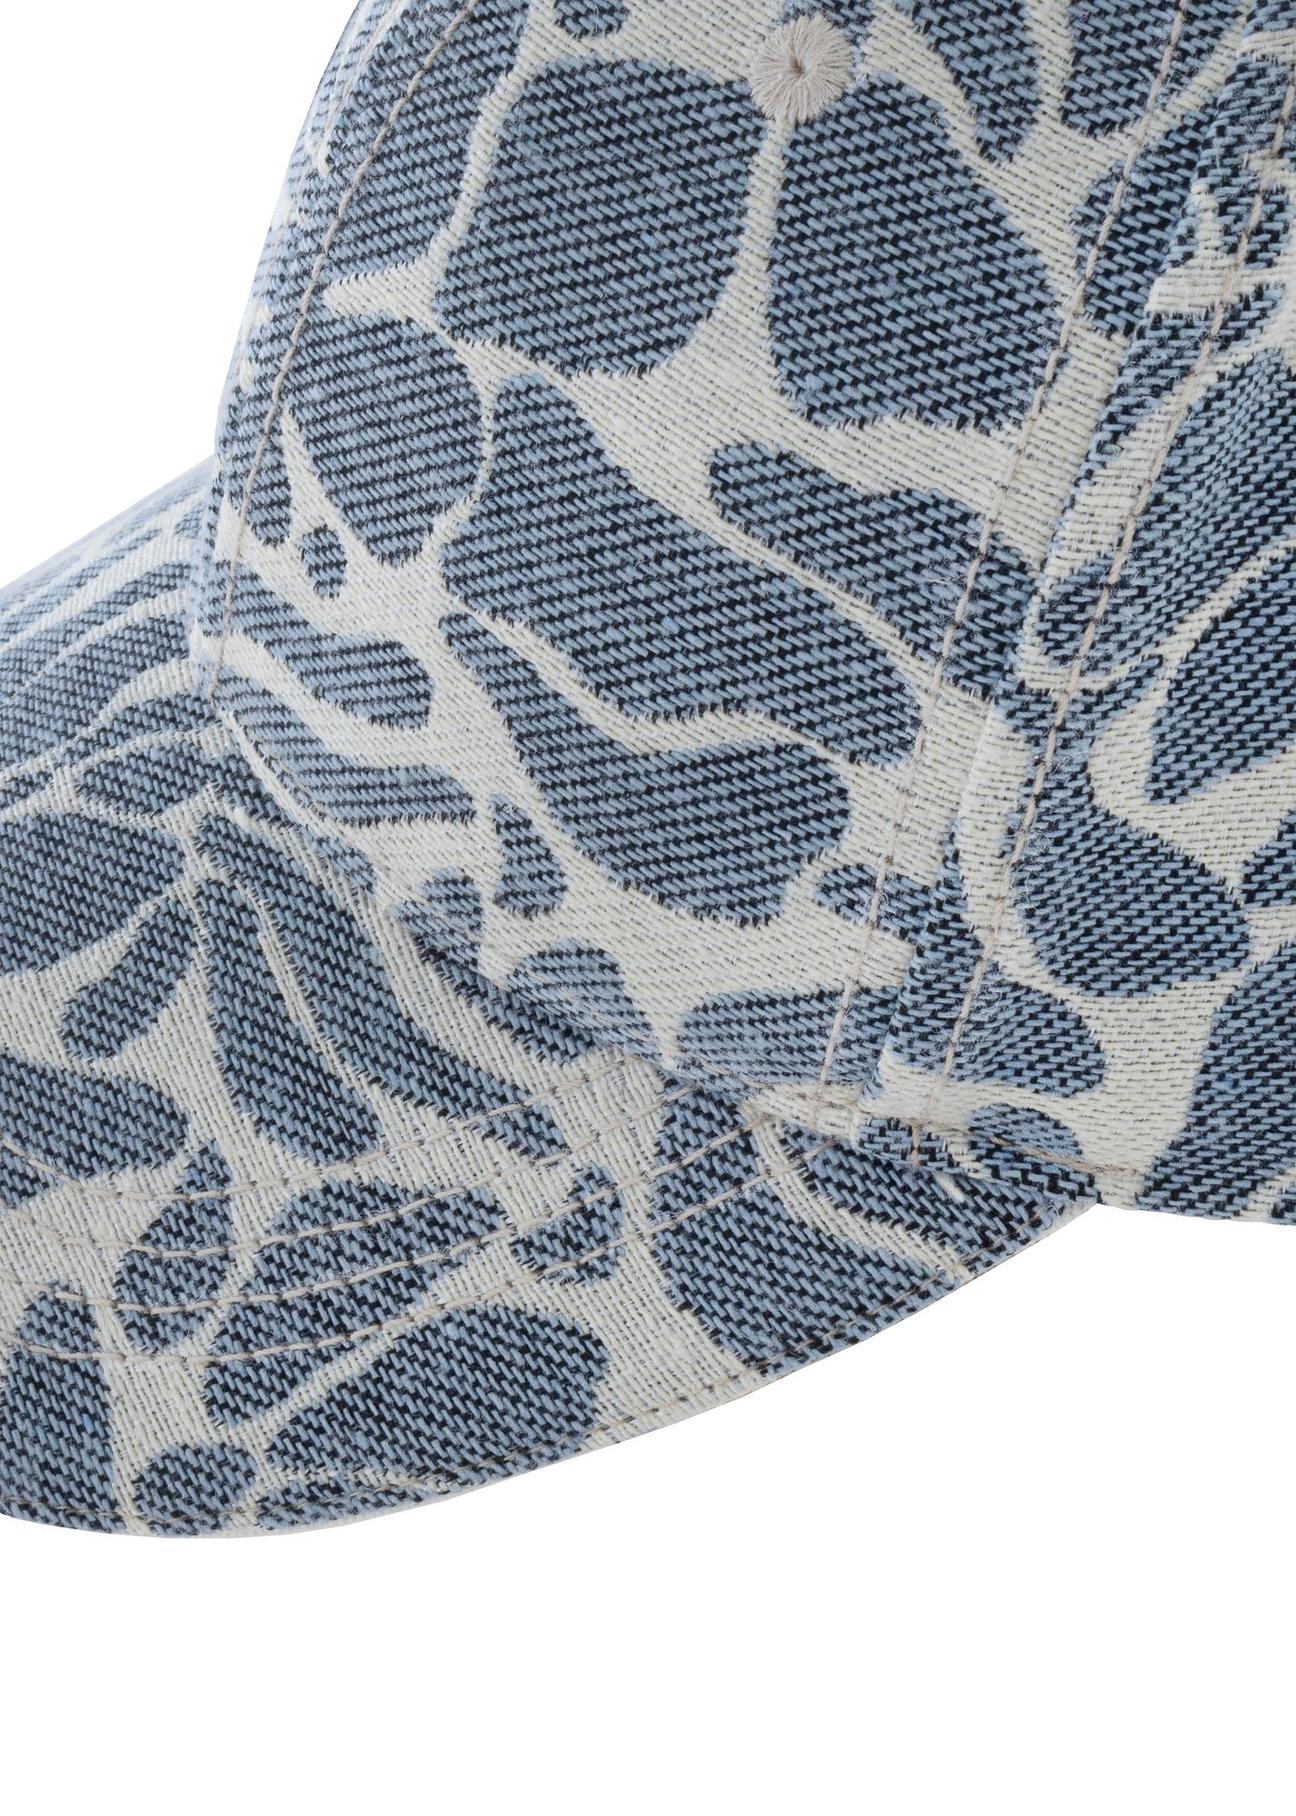 Błękitno-kremowa czapka z daszkiem CZALT-0009-61(W24)